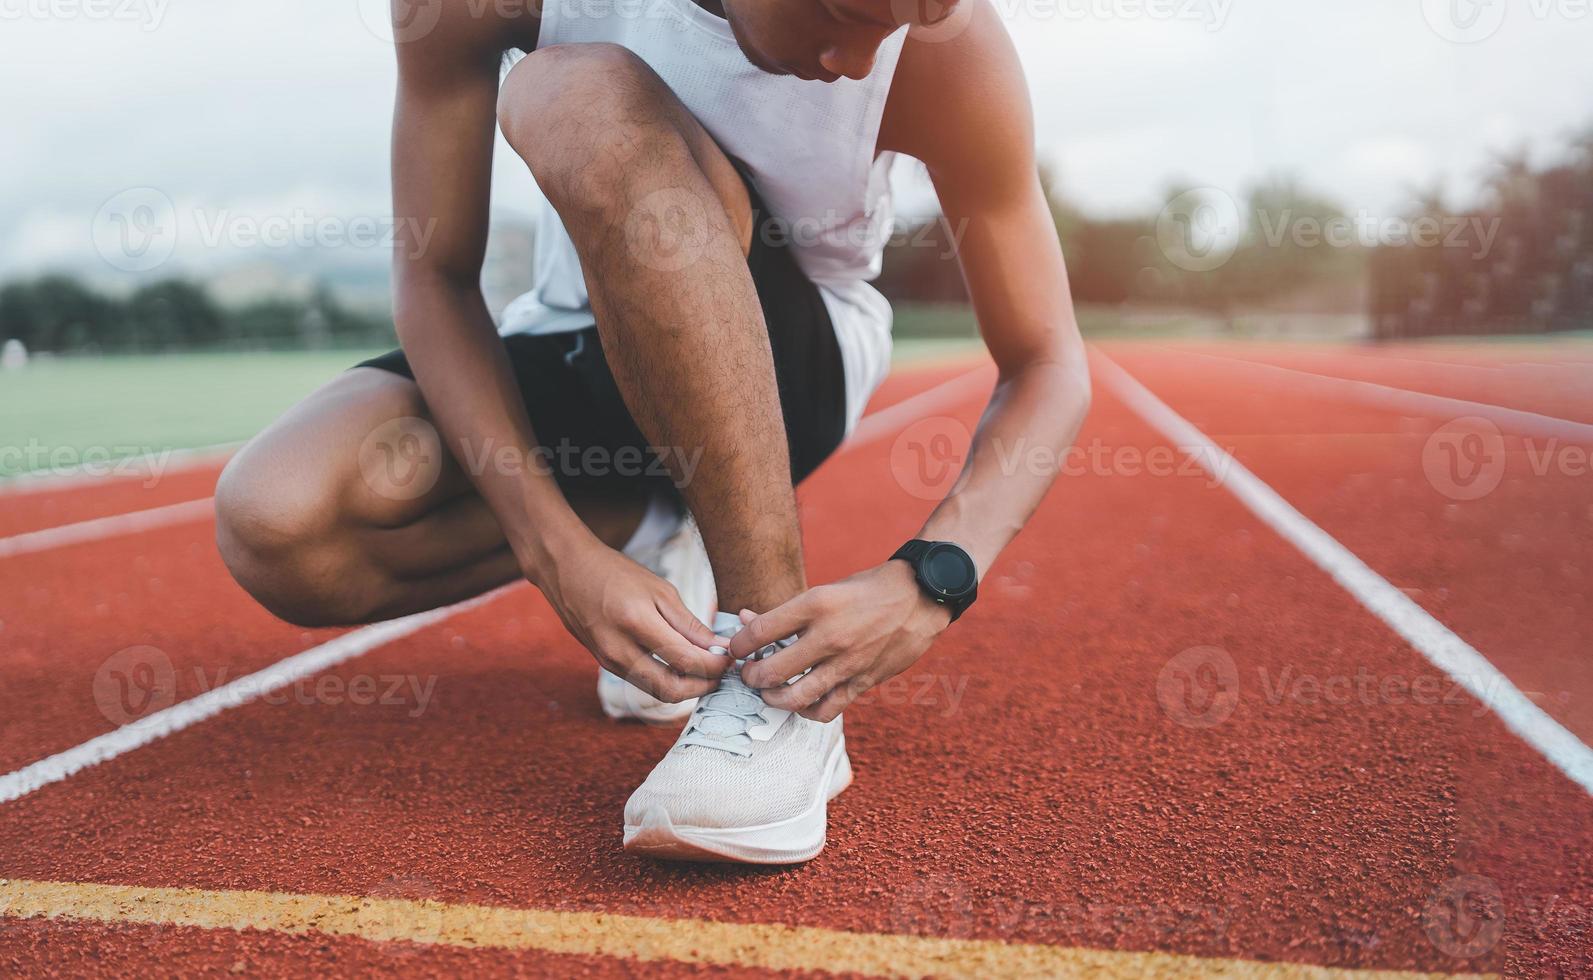 homem corredor ajoelhado e amarrando cadarço na pista no estádio, atleta esportista se prepara para treinar para a corrida de competição. conceito de corrida esportiva. foto